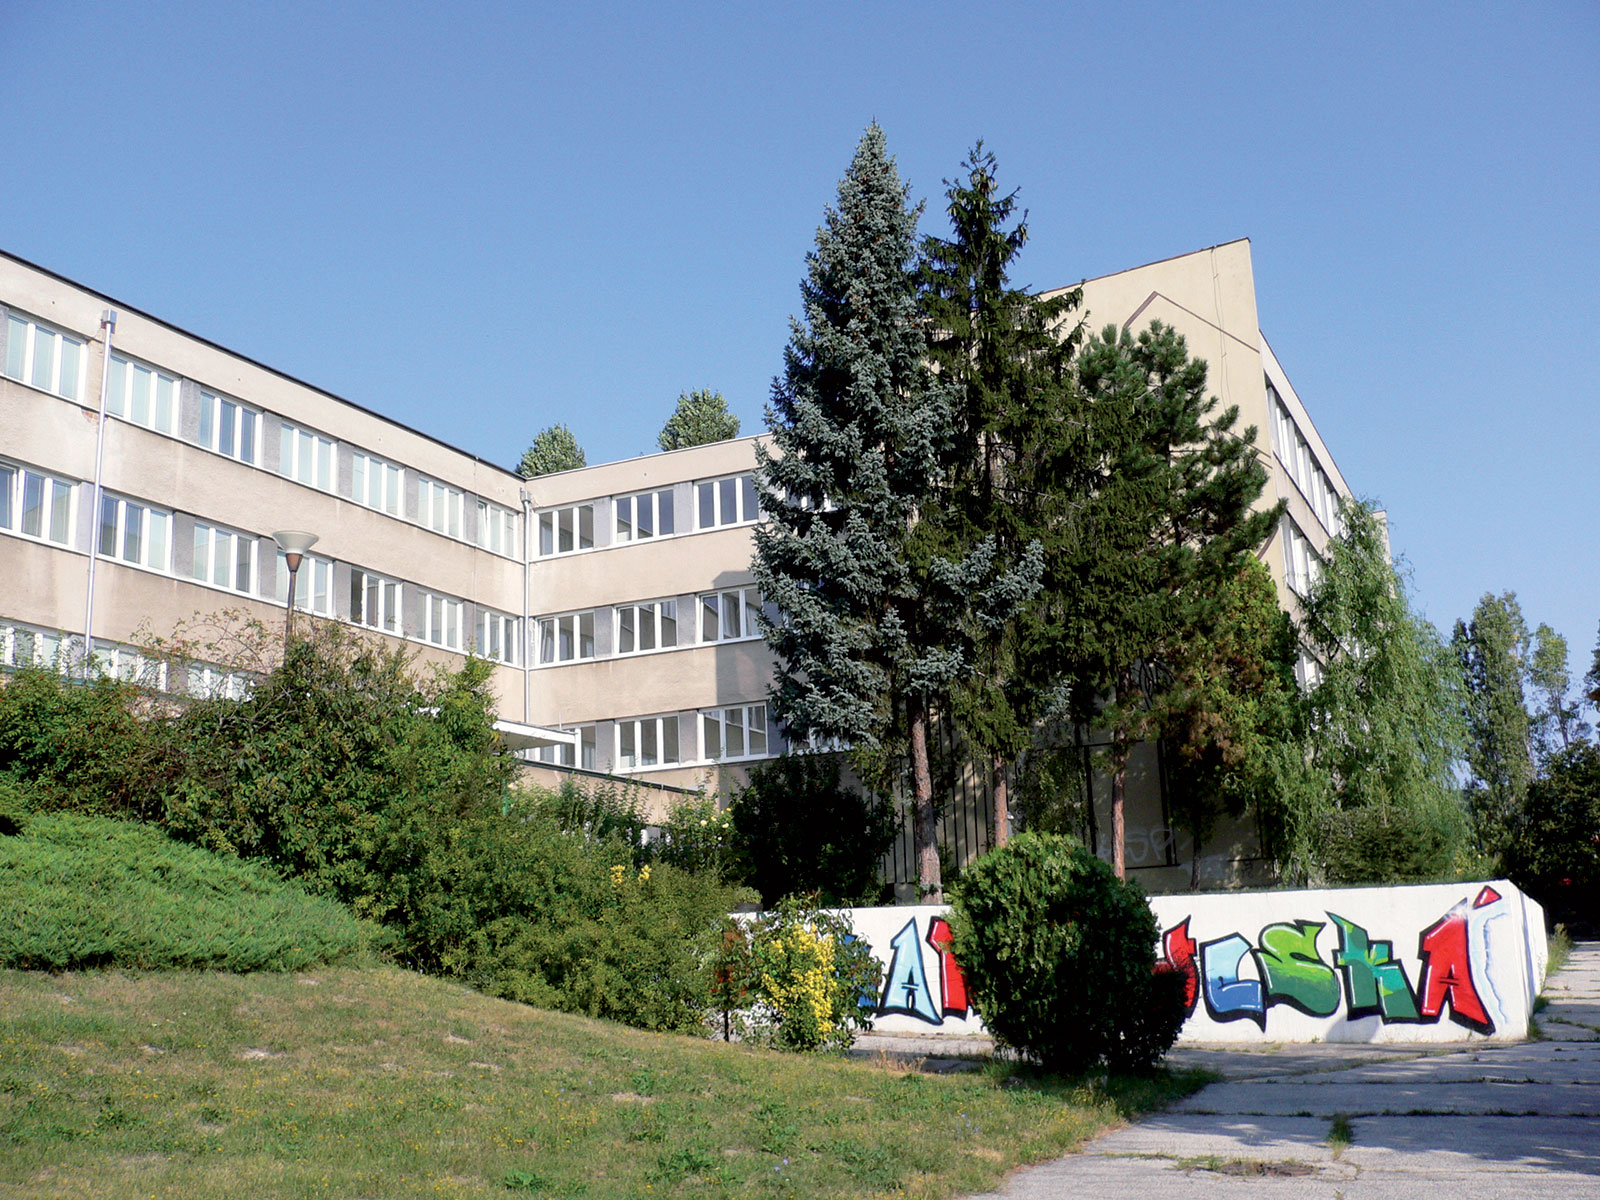 Obr. 1 Posudzovaná škola predstavuje 3 poschodovú nepodpivničenú budovu postavenú koncom 60. rokov 20. storočia.